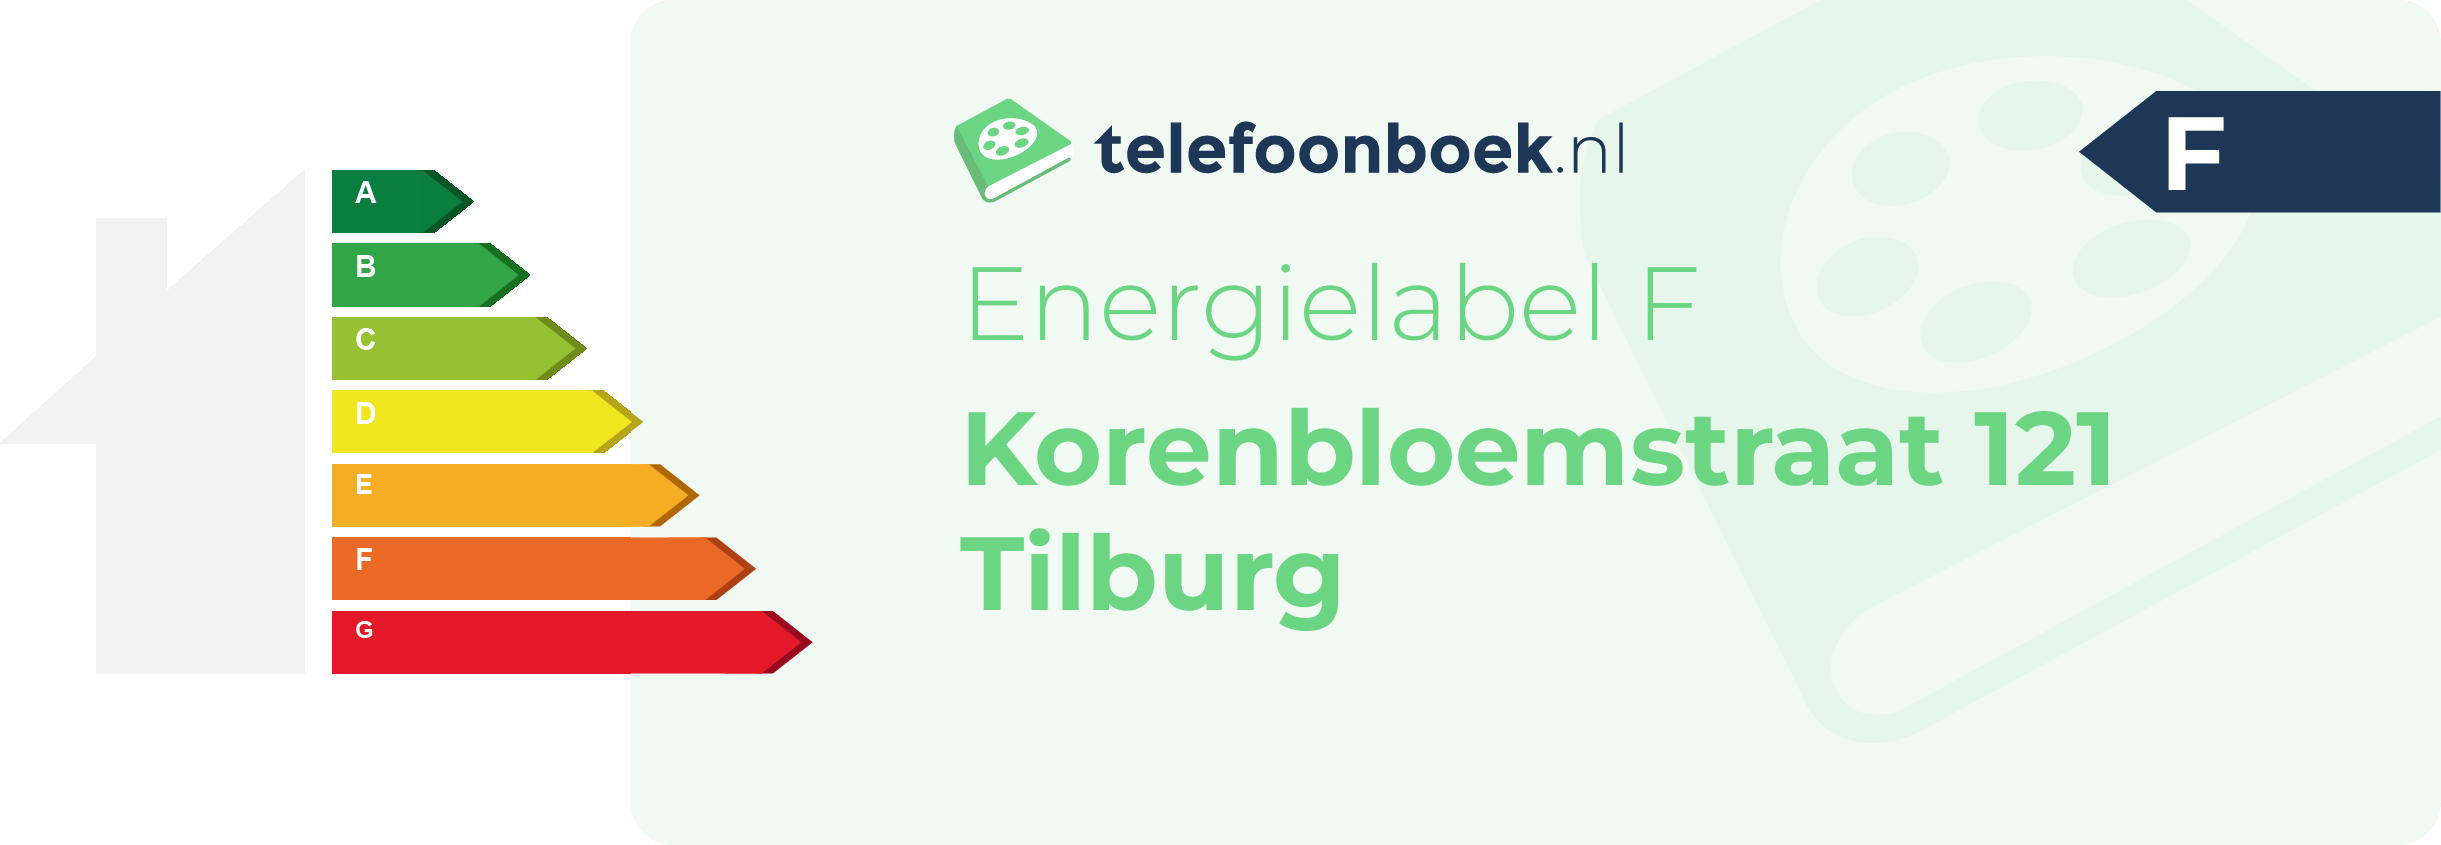 Energielabel Korenbloemstraat 121 Tilburg